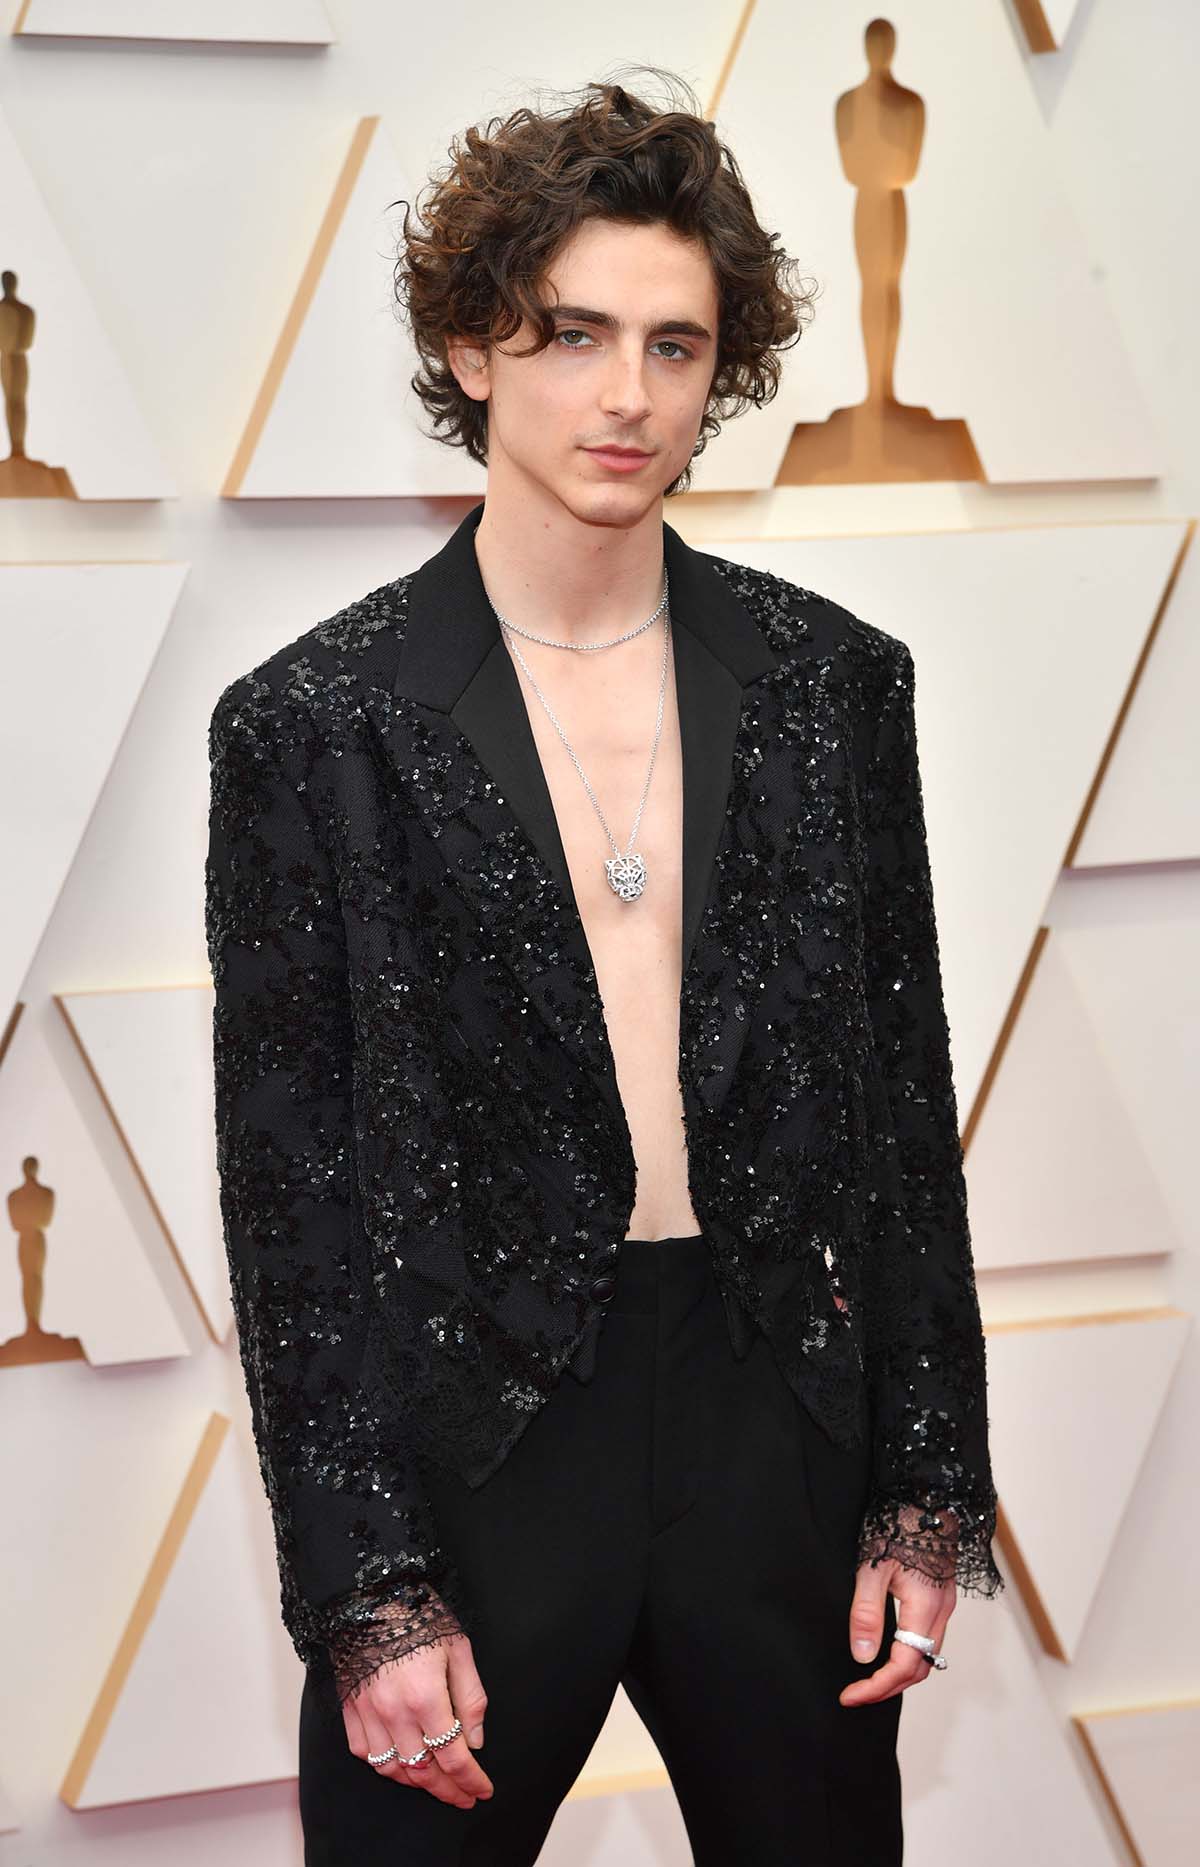 Timothée Chalamet Showed Up Shirtless at the Oscars